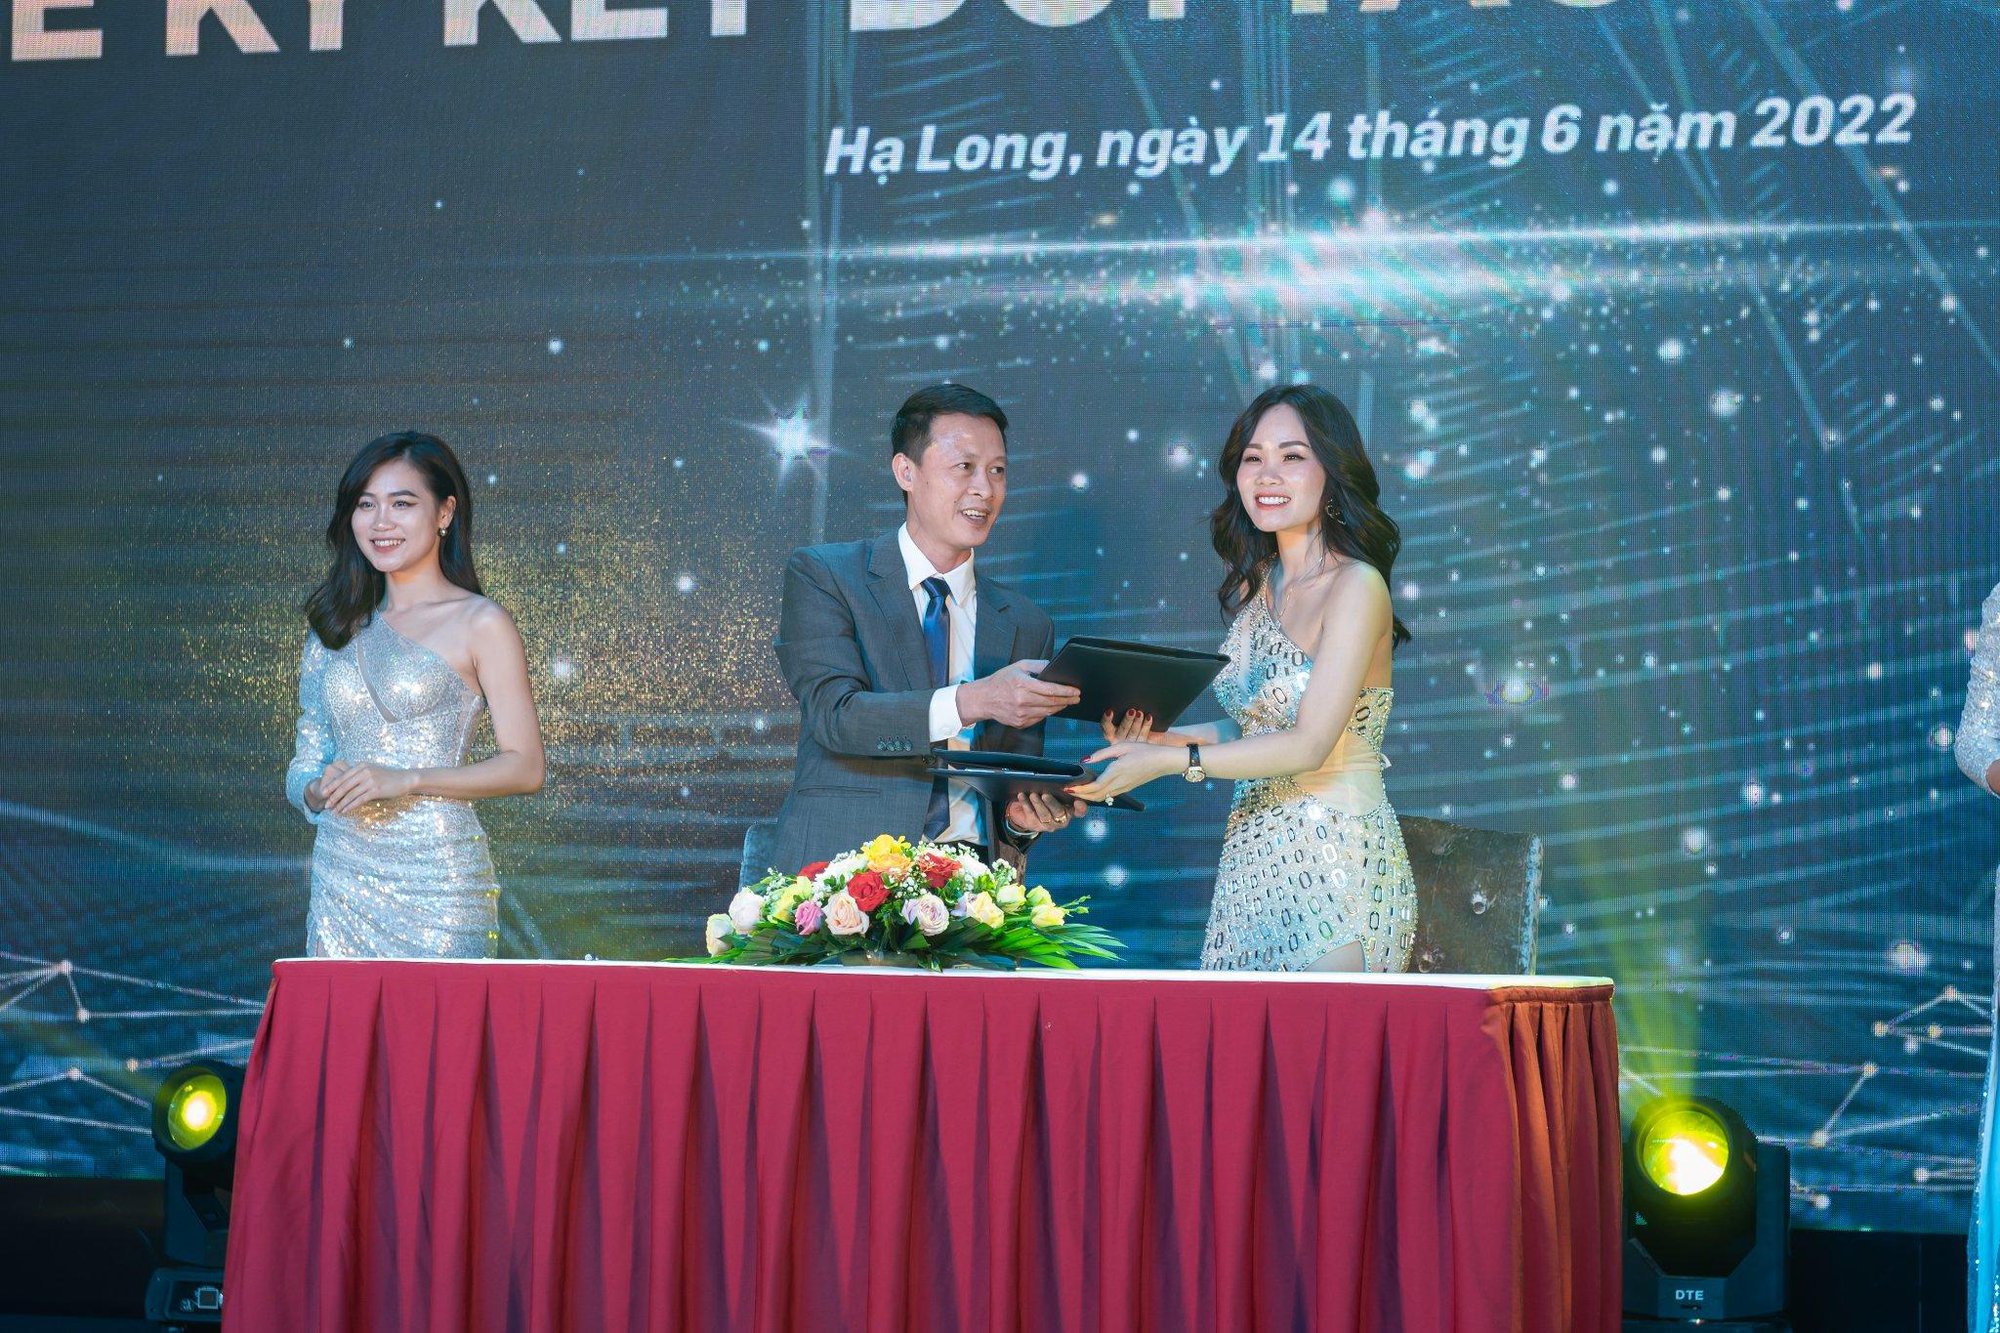 “Hành trình vươn xa&quot; - Baliogo ký kết đối tác chiến lược với 10 streamer bán hàng hàng đầu Việt Nam - Ảnh 2.